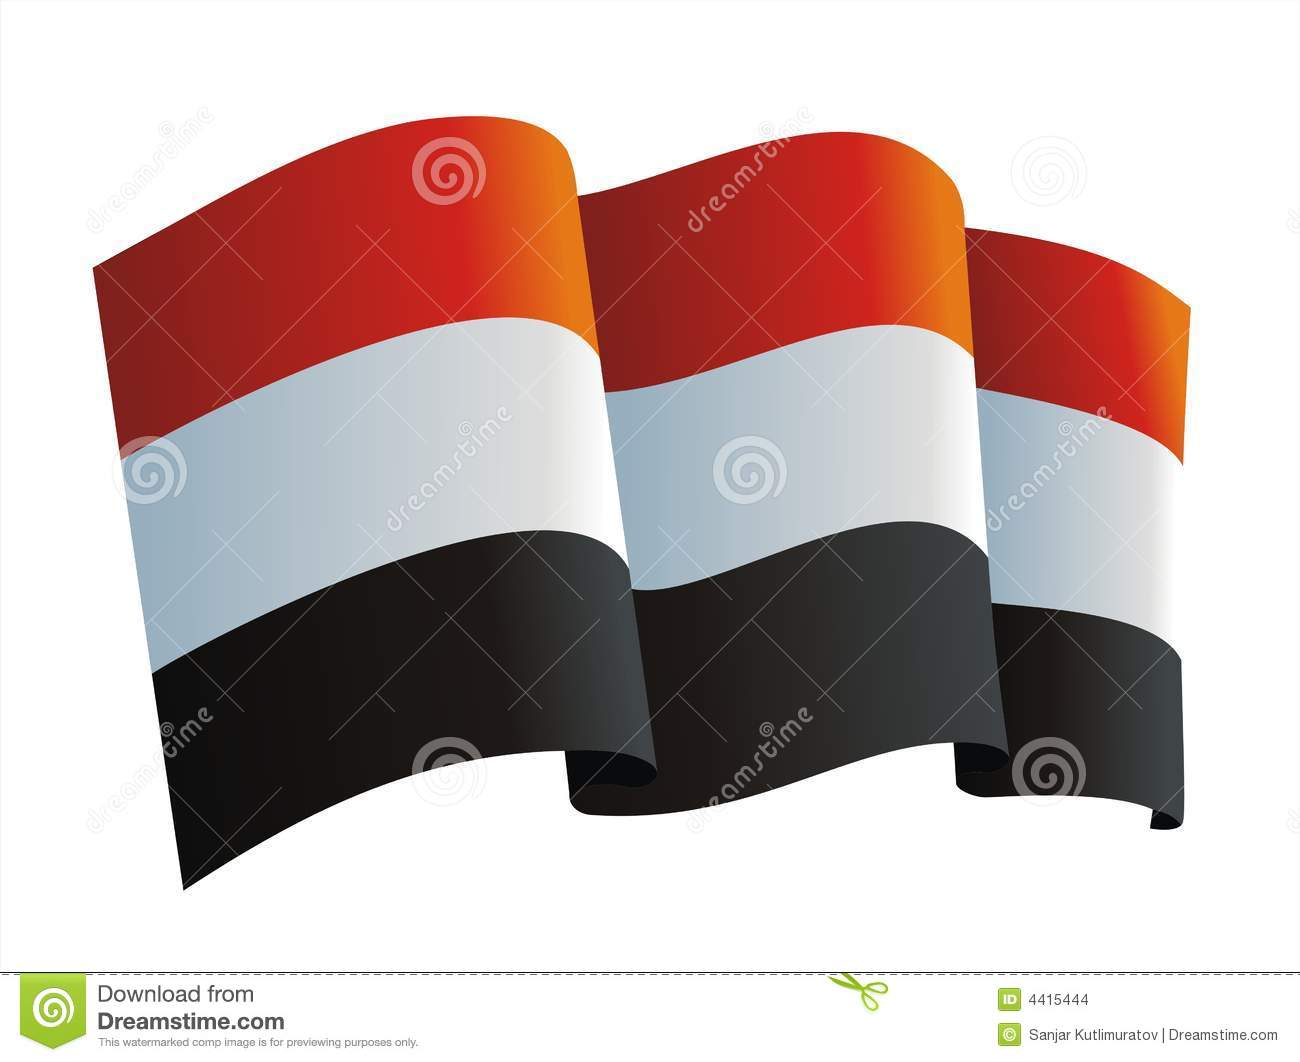 12 17 15yemen-flag-4415444.jpg